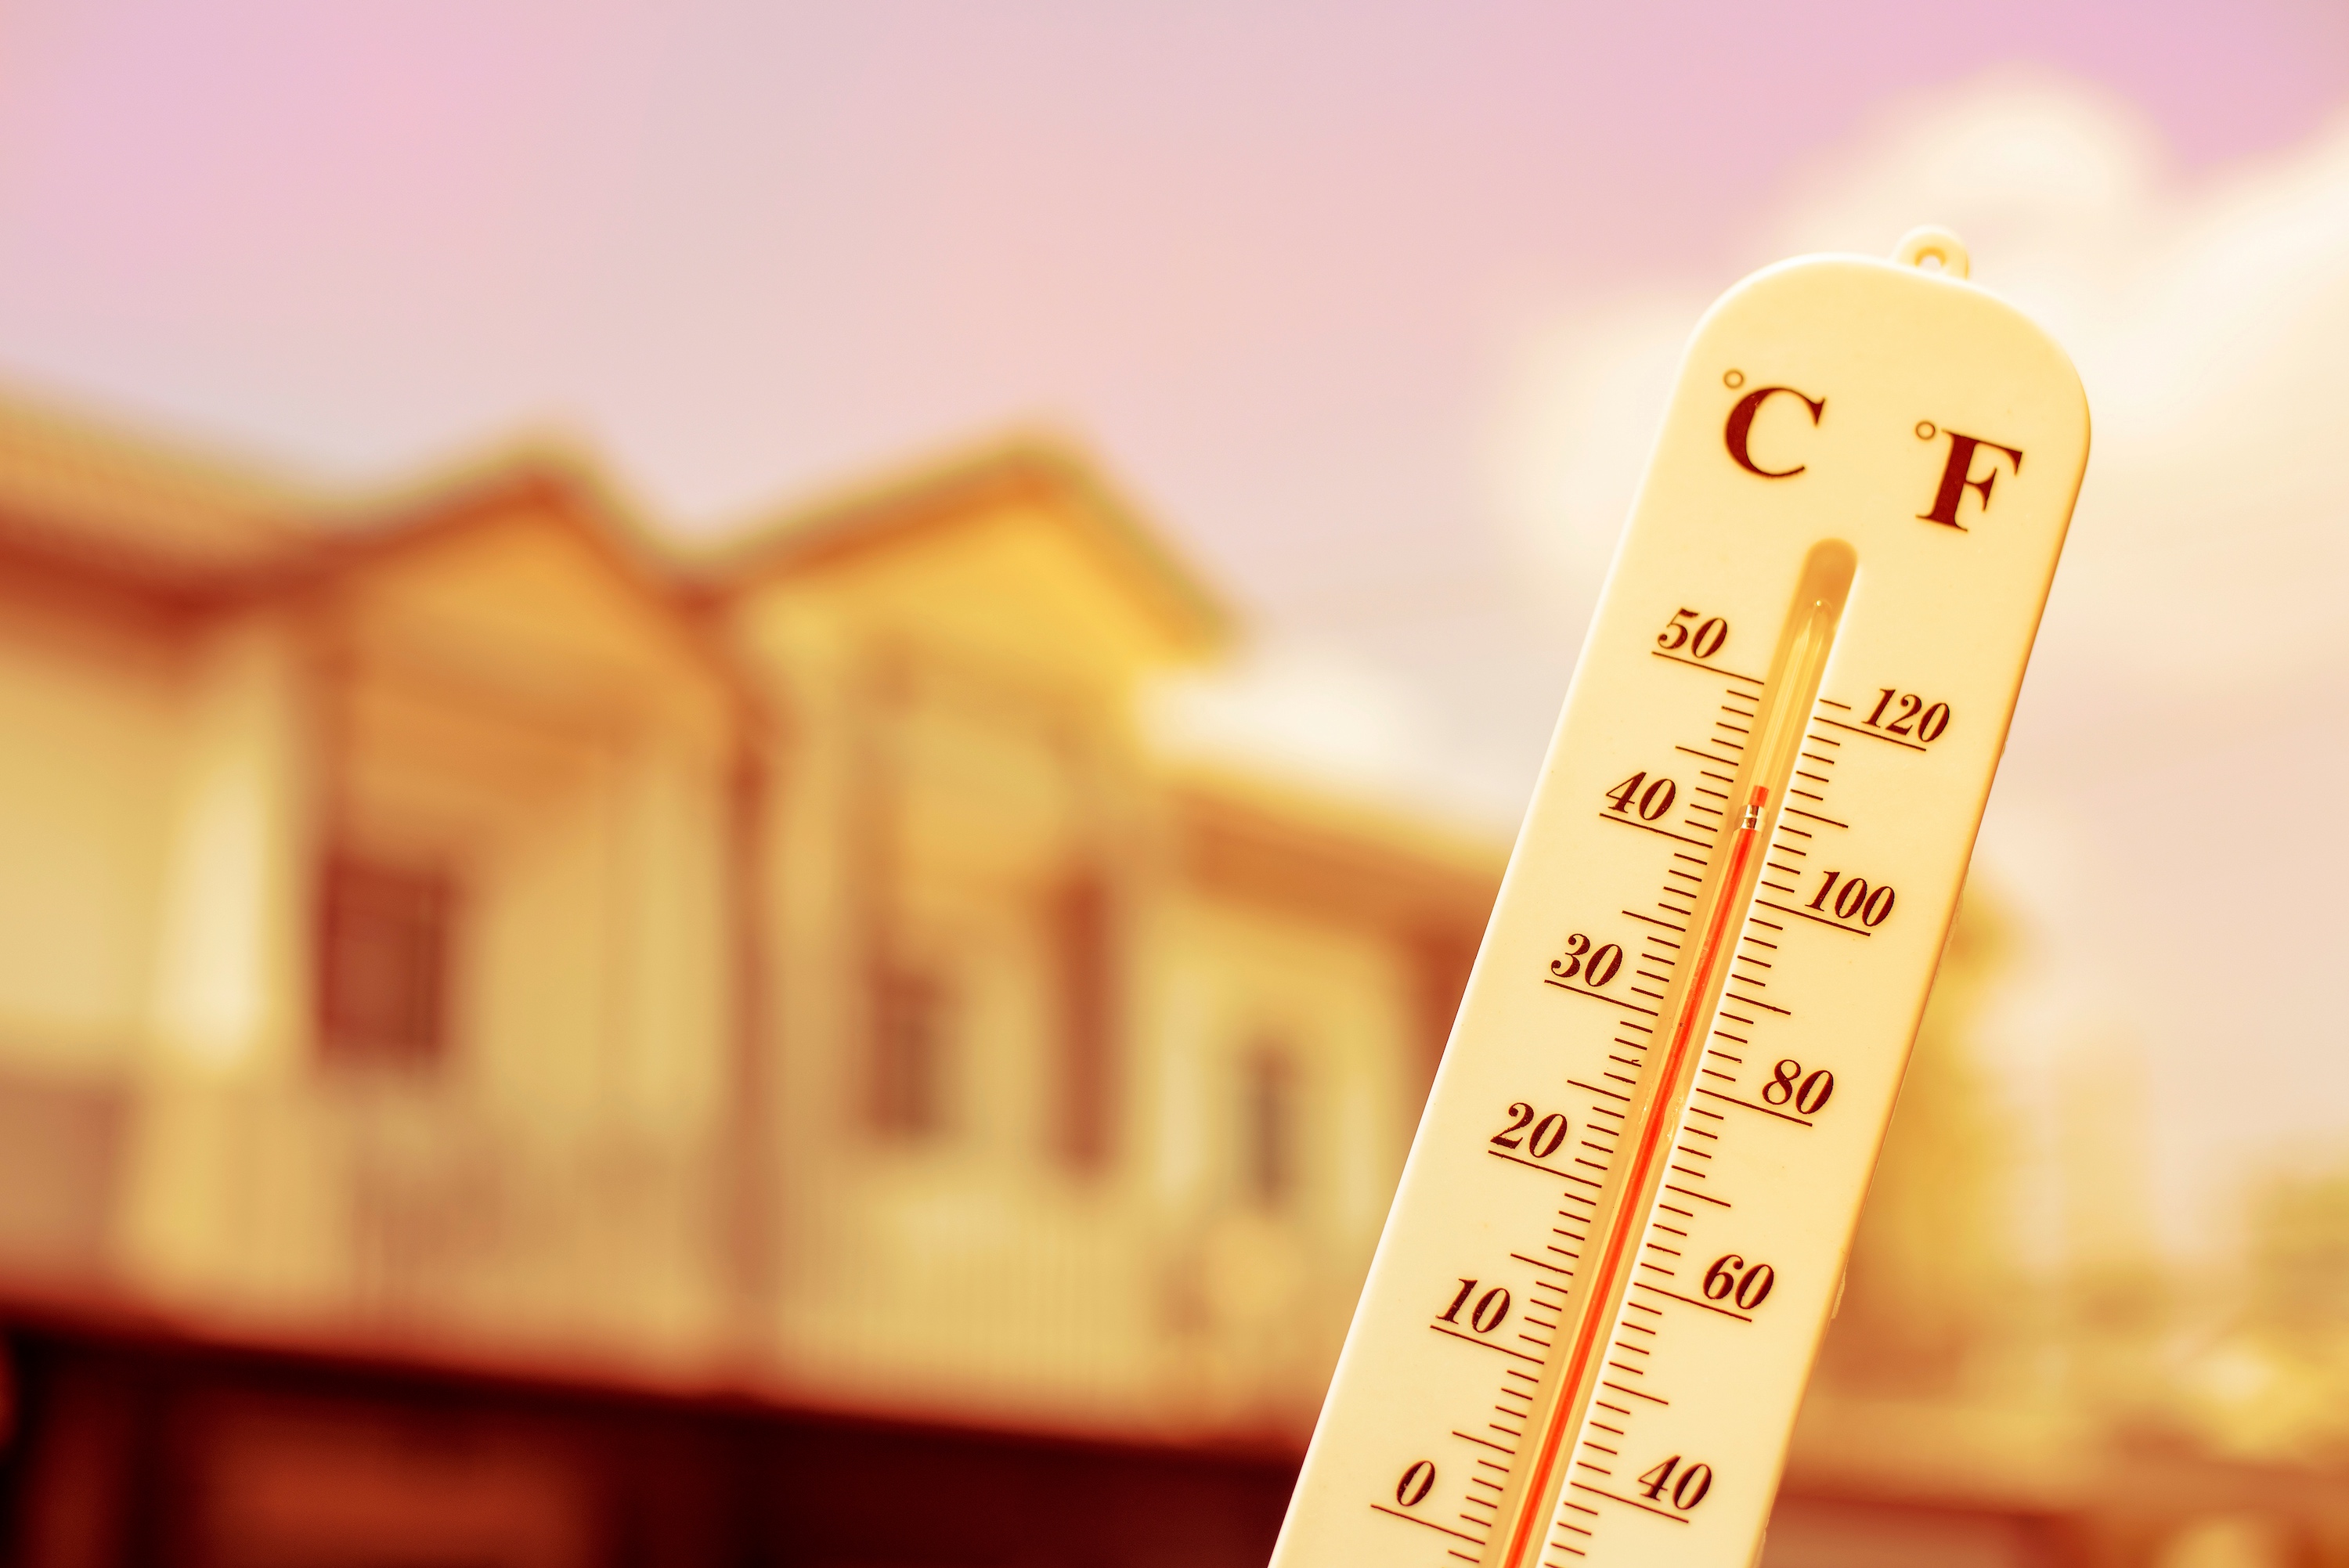 Près de 80 % de la population française subiront de 16 à 29 journées anormalement chaudes en été d'ici 2050. © tonefotografia, Adobe Stock